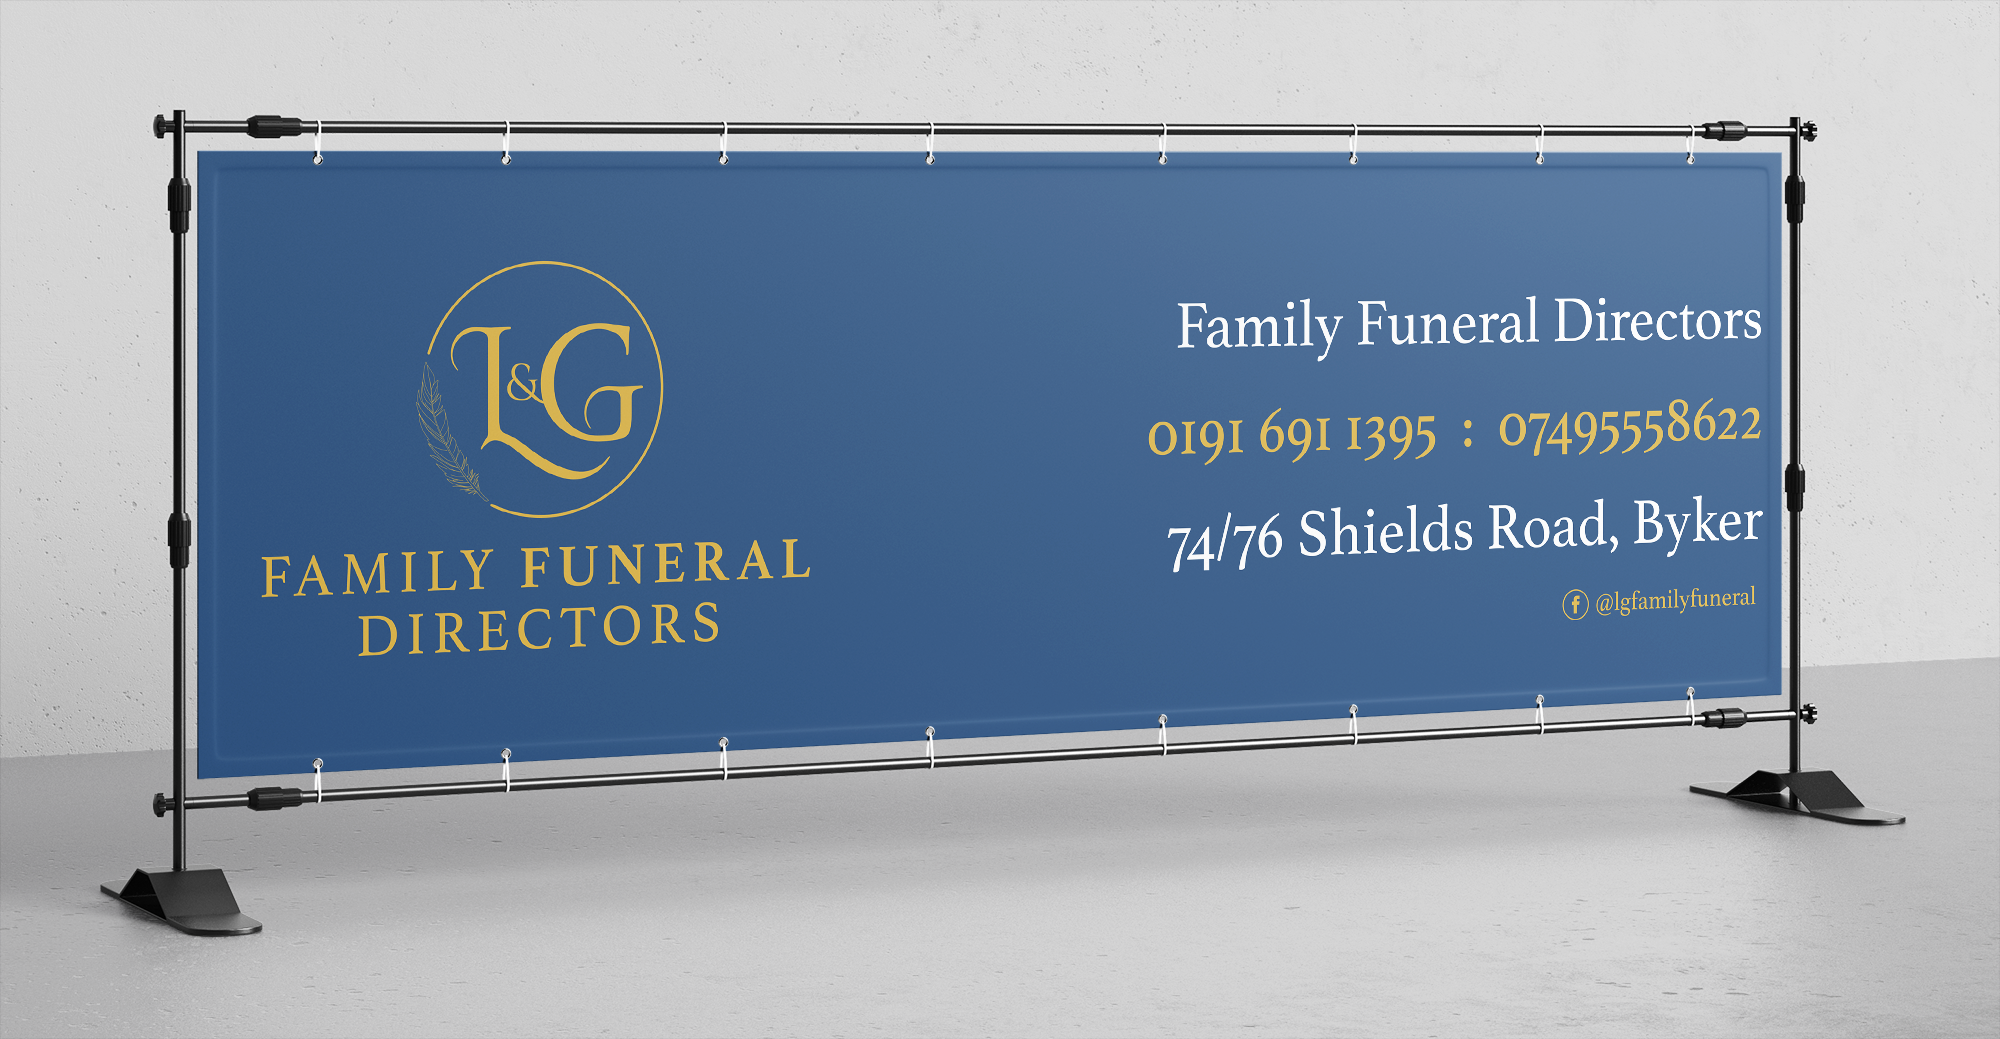 Funeral directors logo branding advert design newcastle